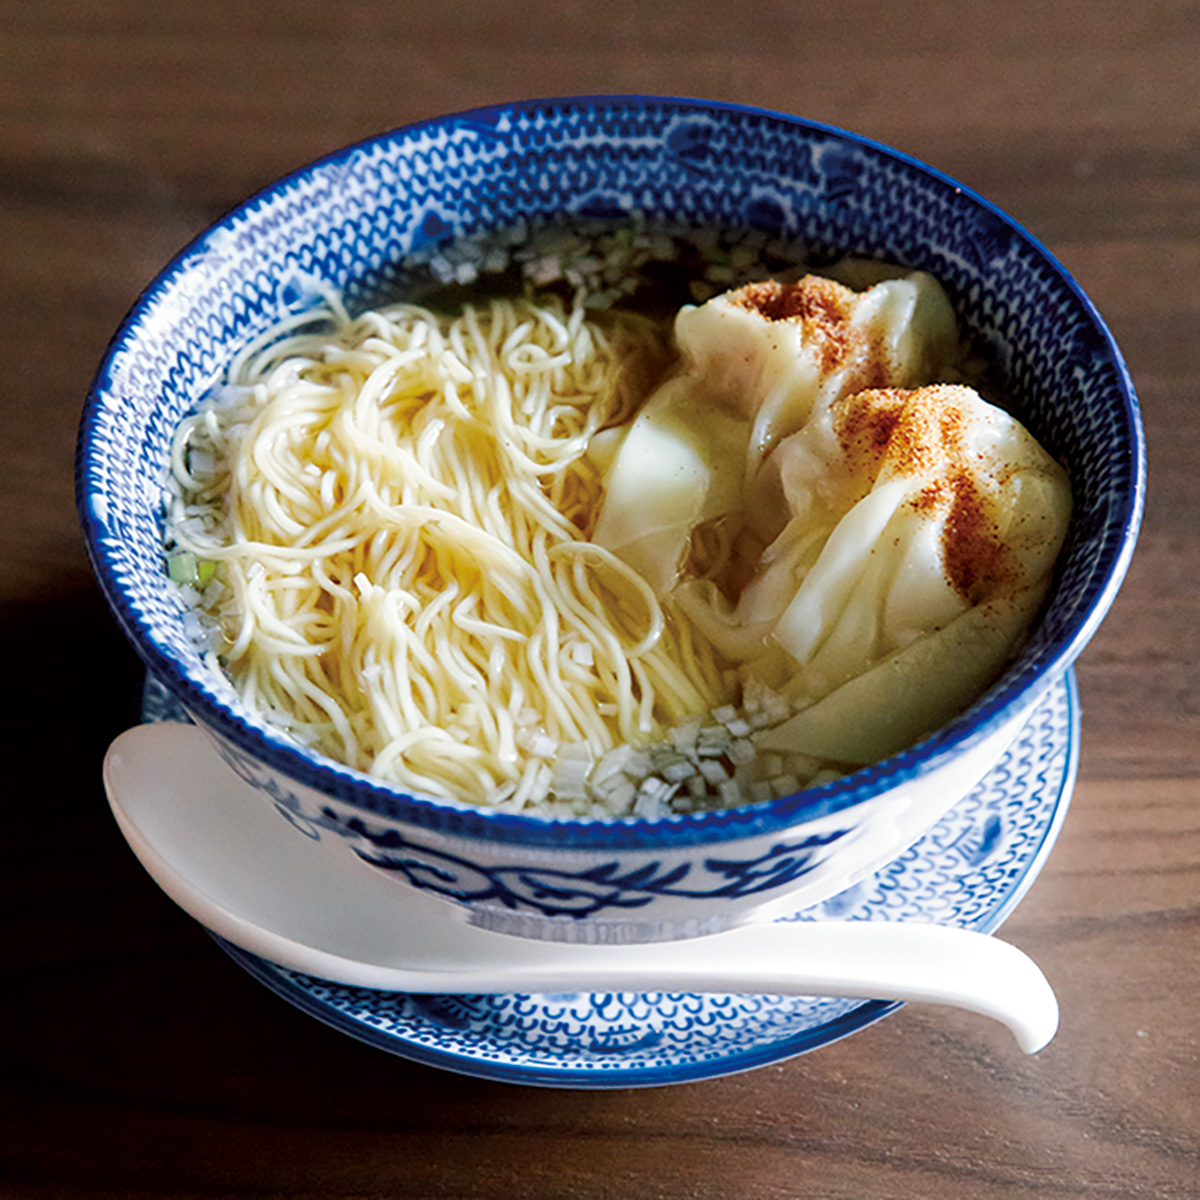 専門店時代の看板メニューである「担担麺」と人気を二分する「香港海老雲呑麺」1,200円。